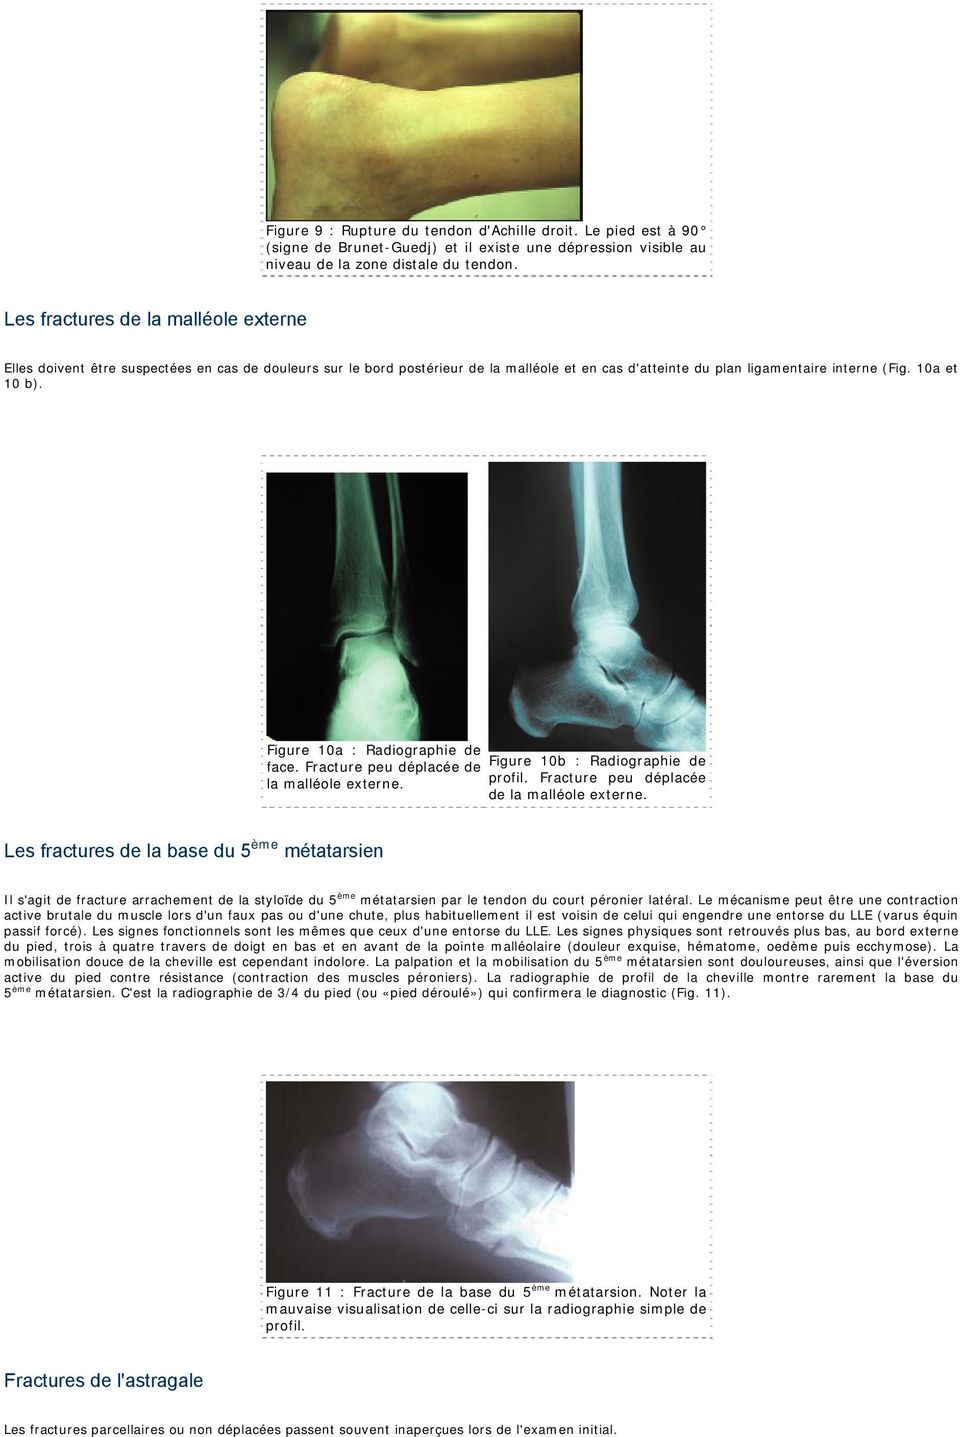 Figure 10a : Radiographie de face. Fracture peu déplacée de Figure 10b : Radiographie de la malléole externe. profil. Fracture peu déplacée de la malléole externe.